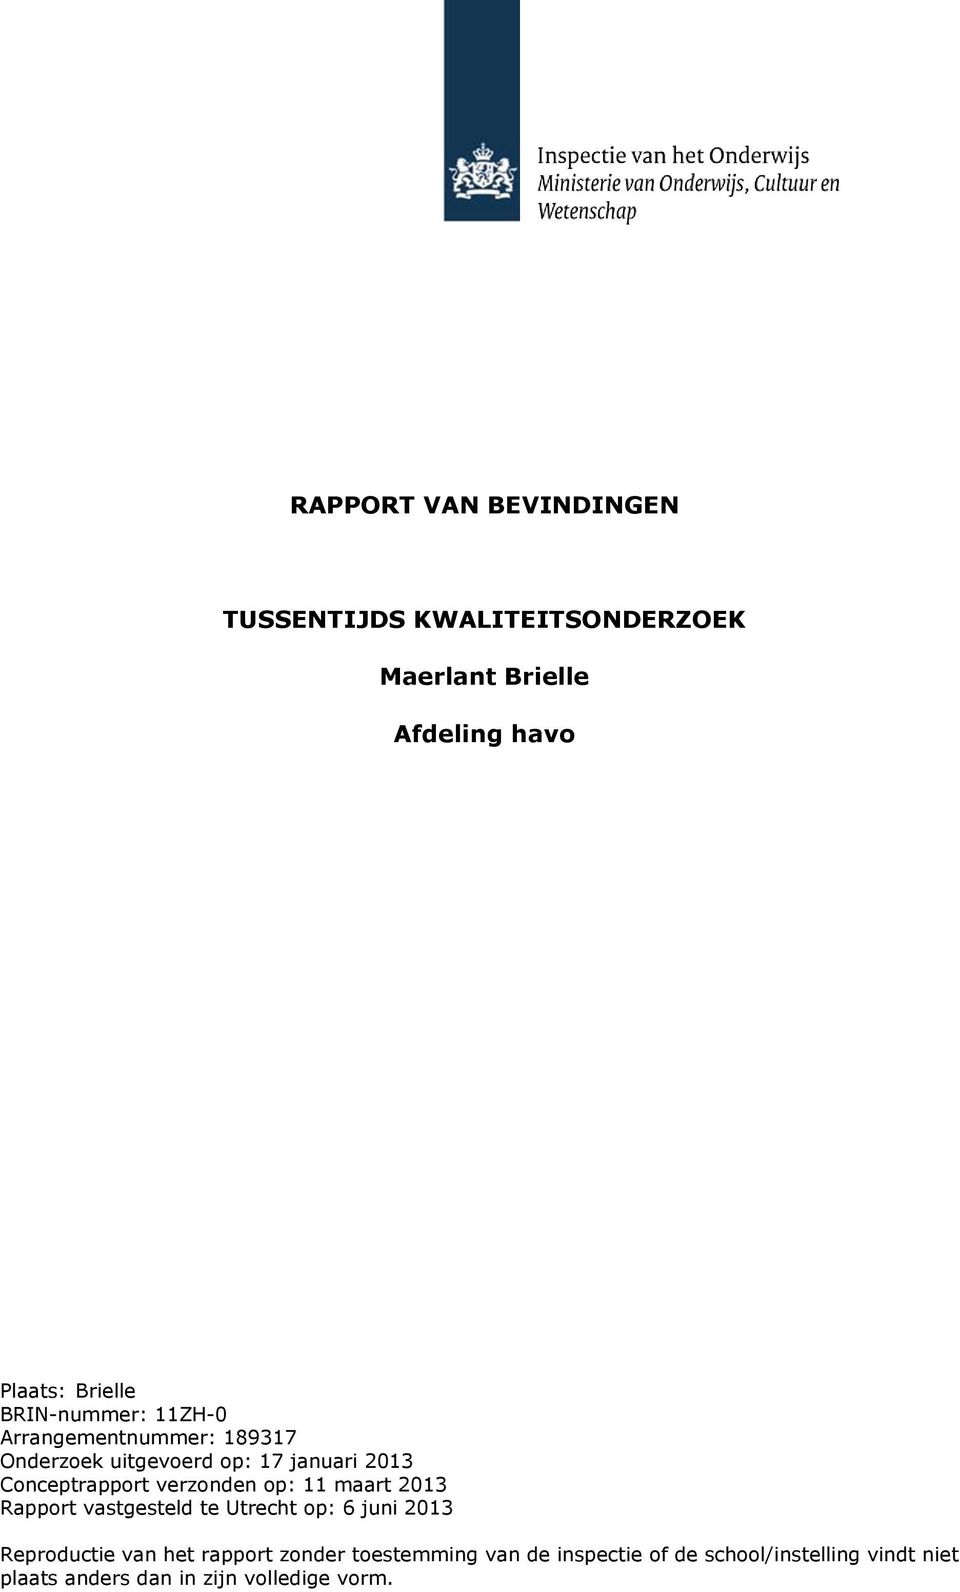 verzonden op: 11 maart 2013 Rapport vastgesteld te Utrecht op: 6 juni 2013 Reproductie van het rapport